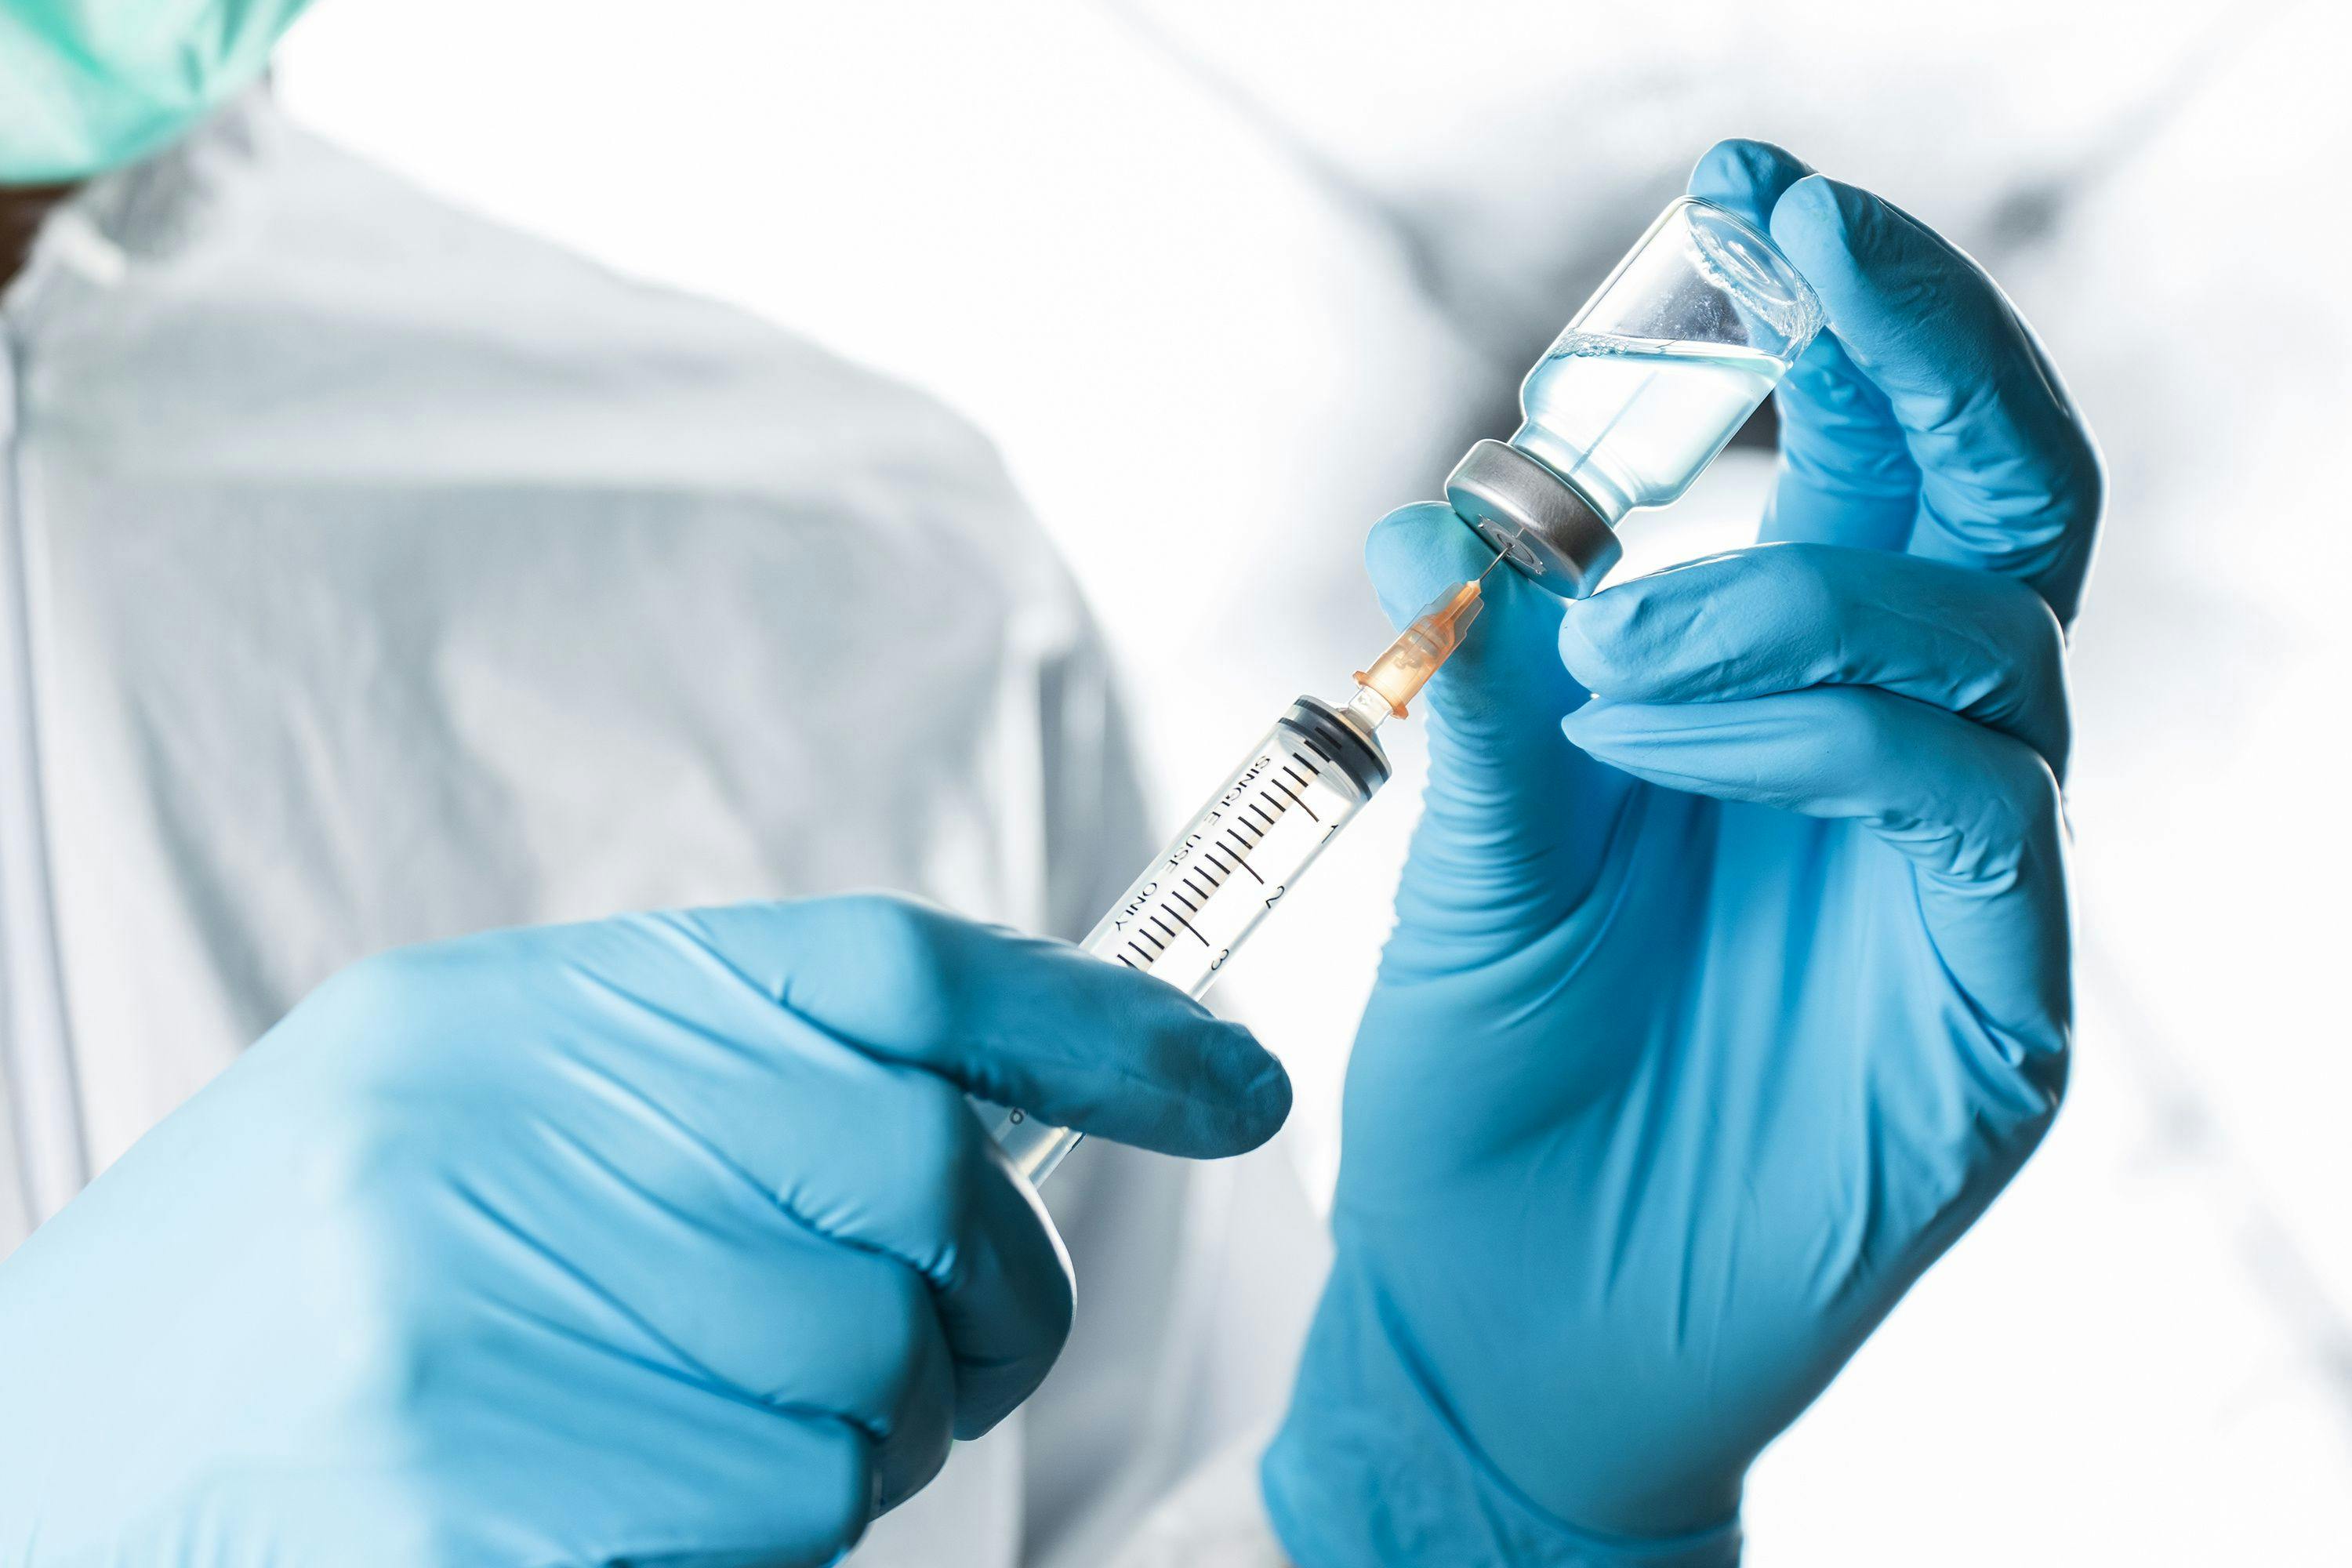 Filling a syringe with IV drug | Image Credit: PhotobyTawat – stock.adobe.com